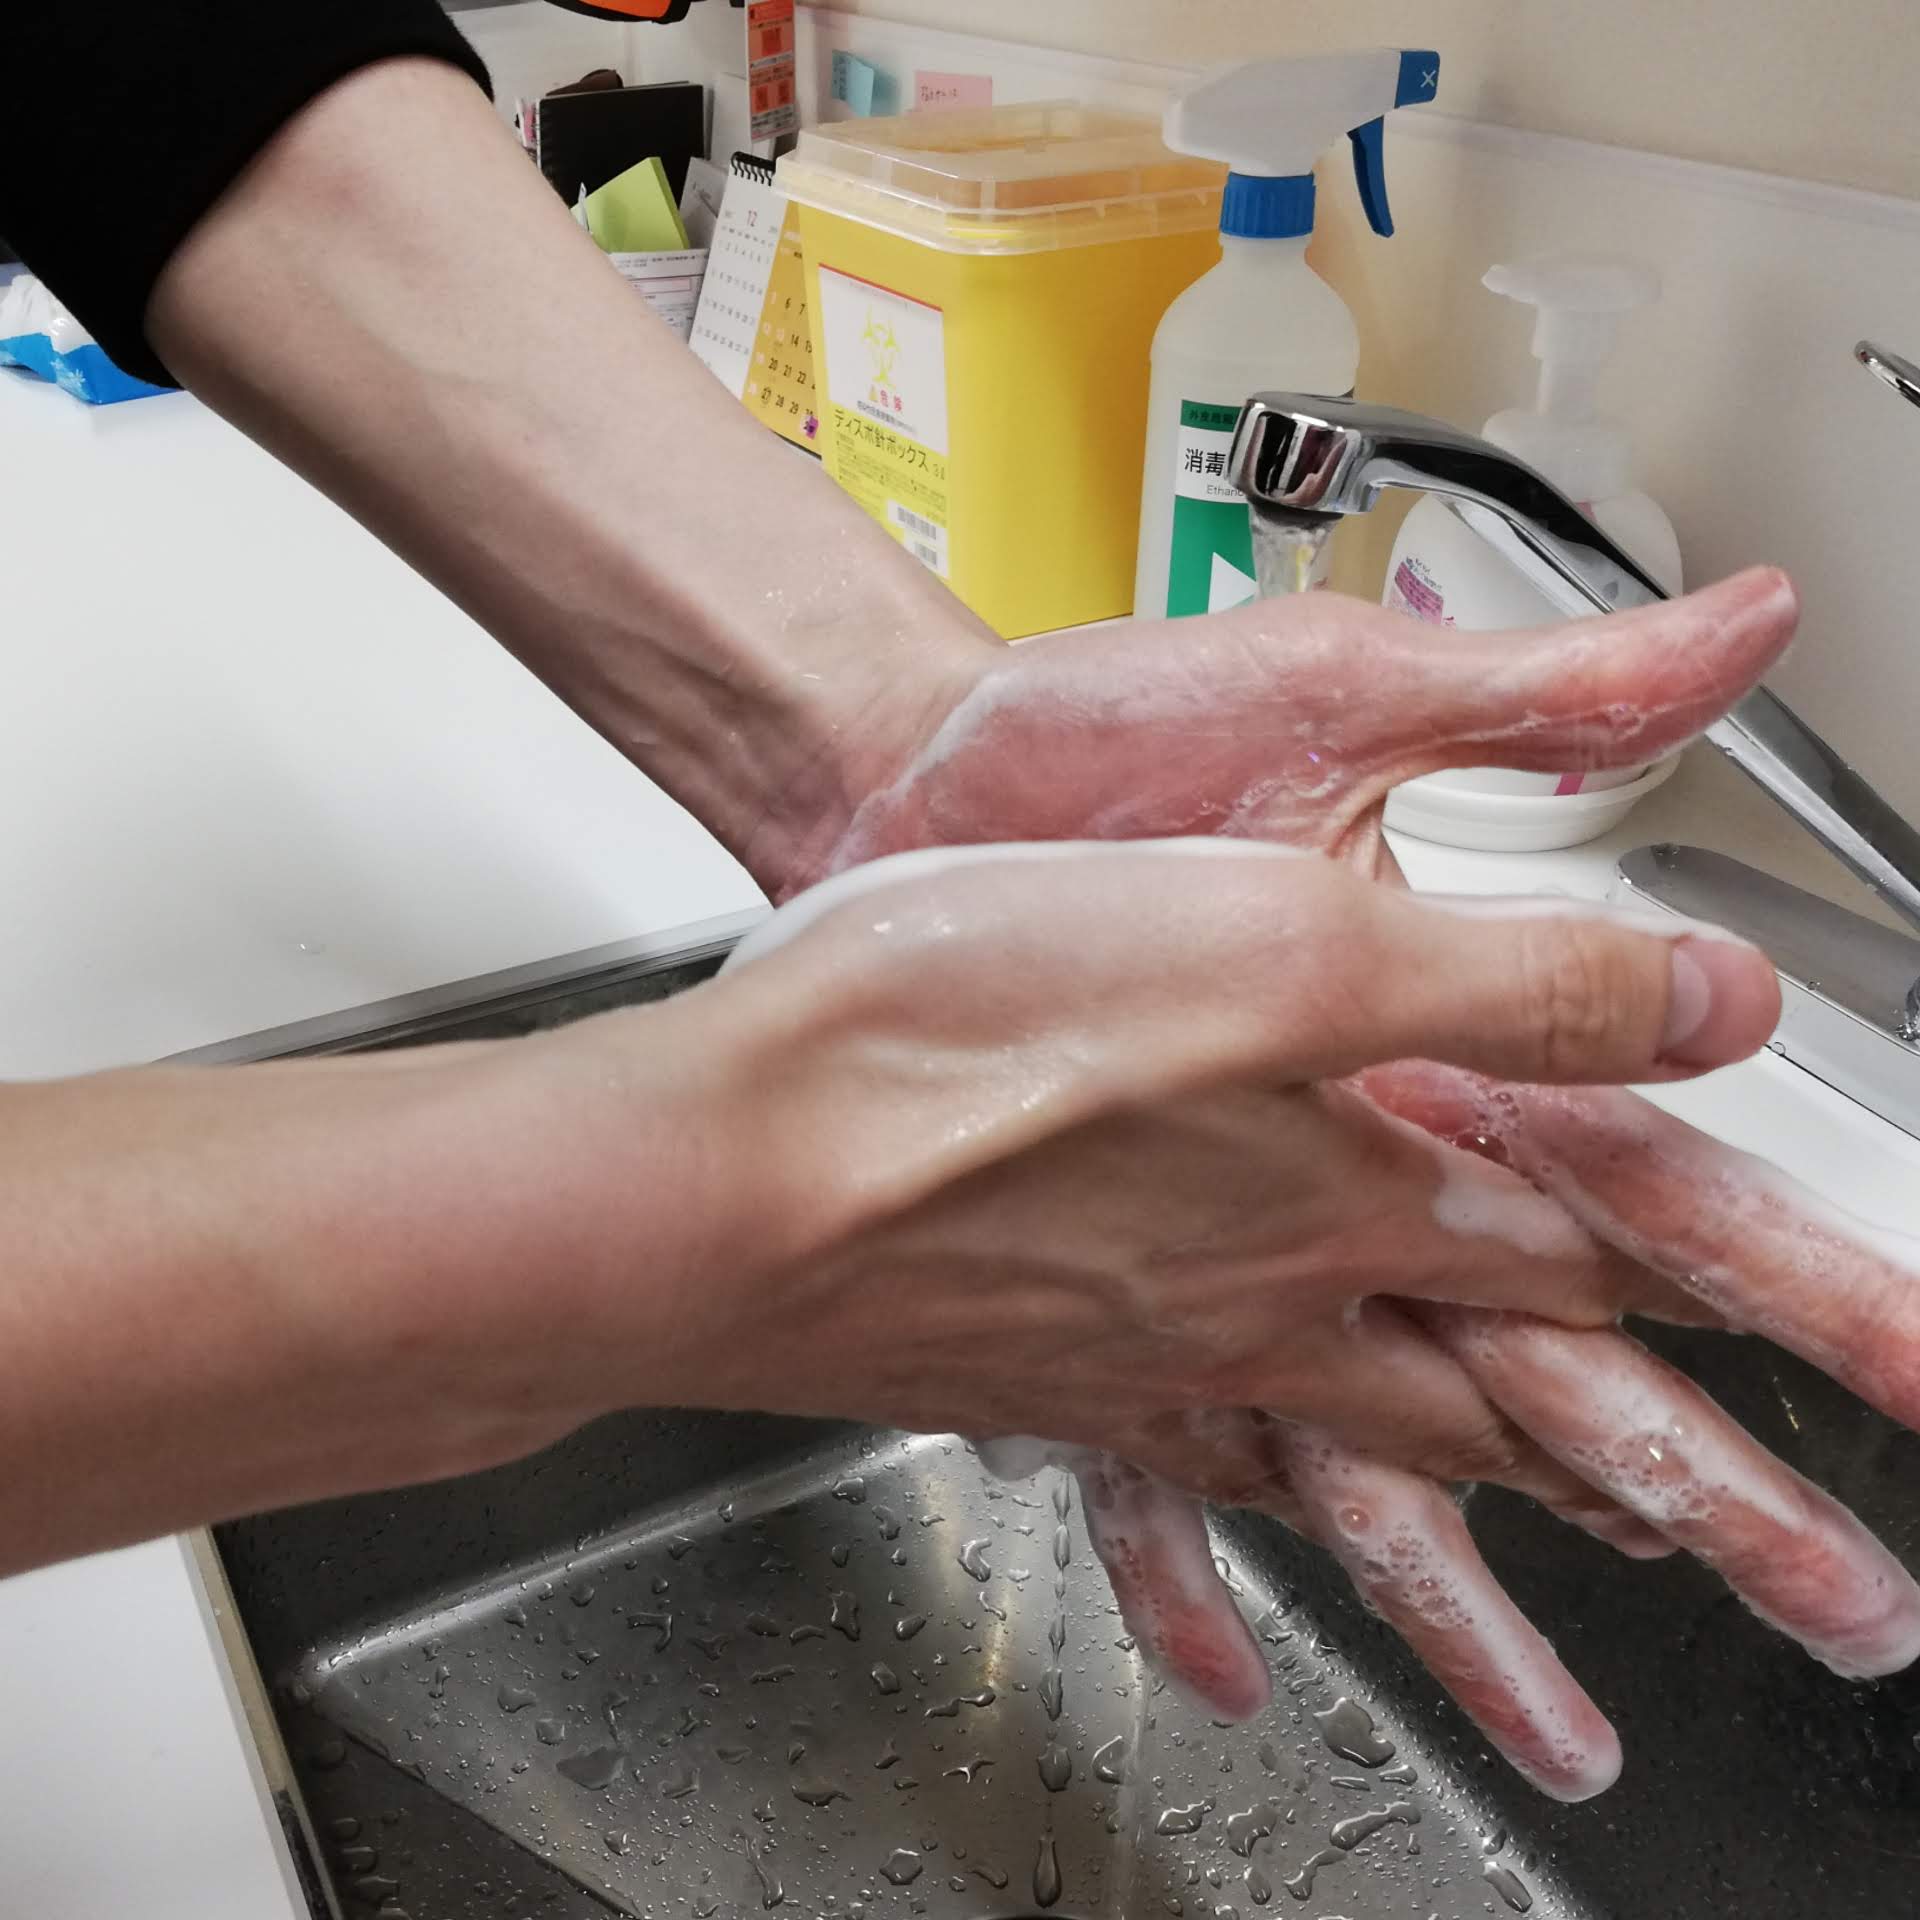 両方の手のひらを合わせこすり、指を組んで指の間を洗う